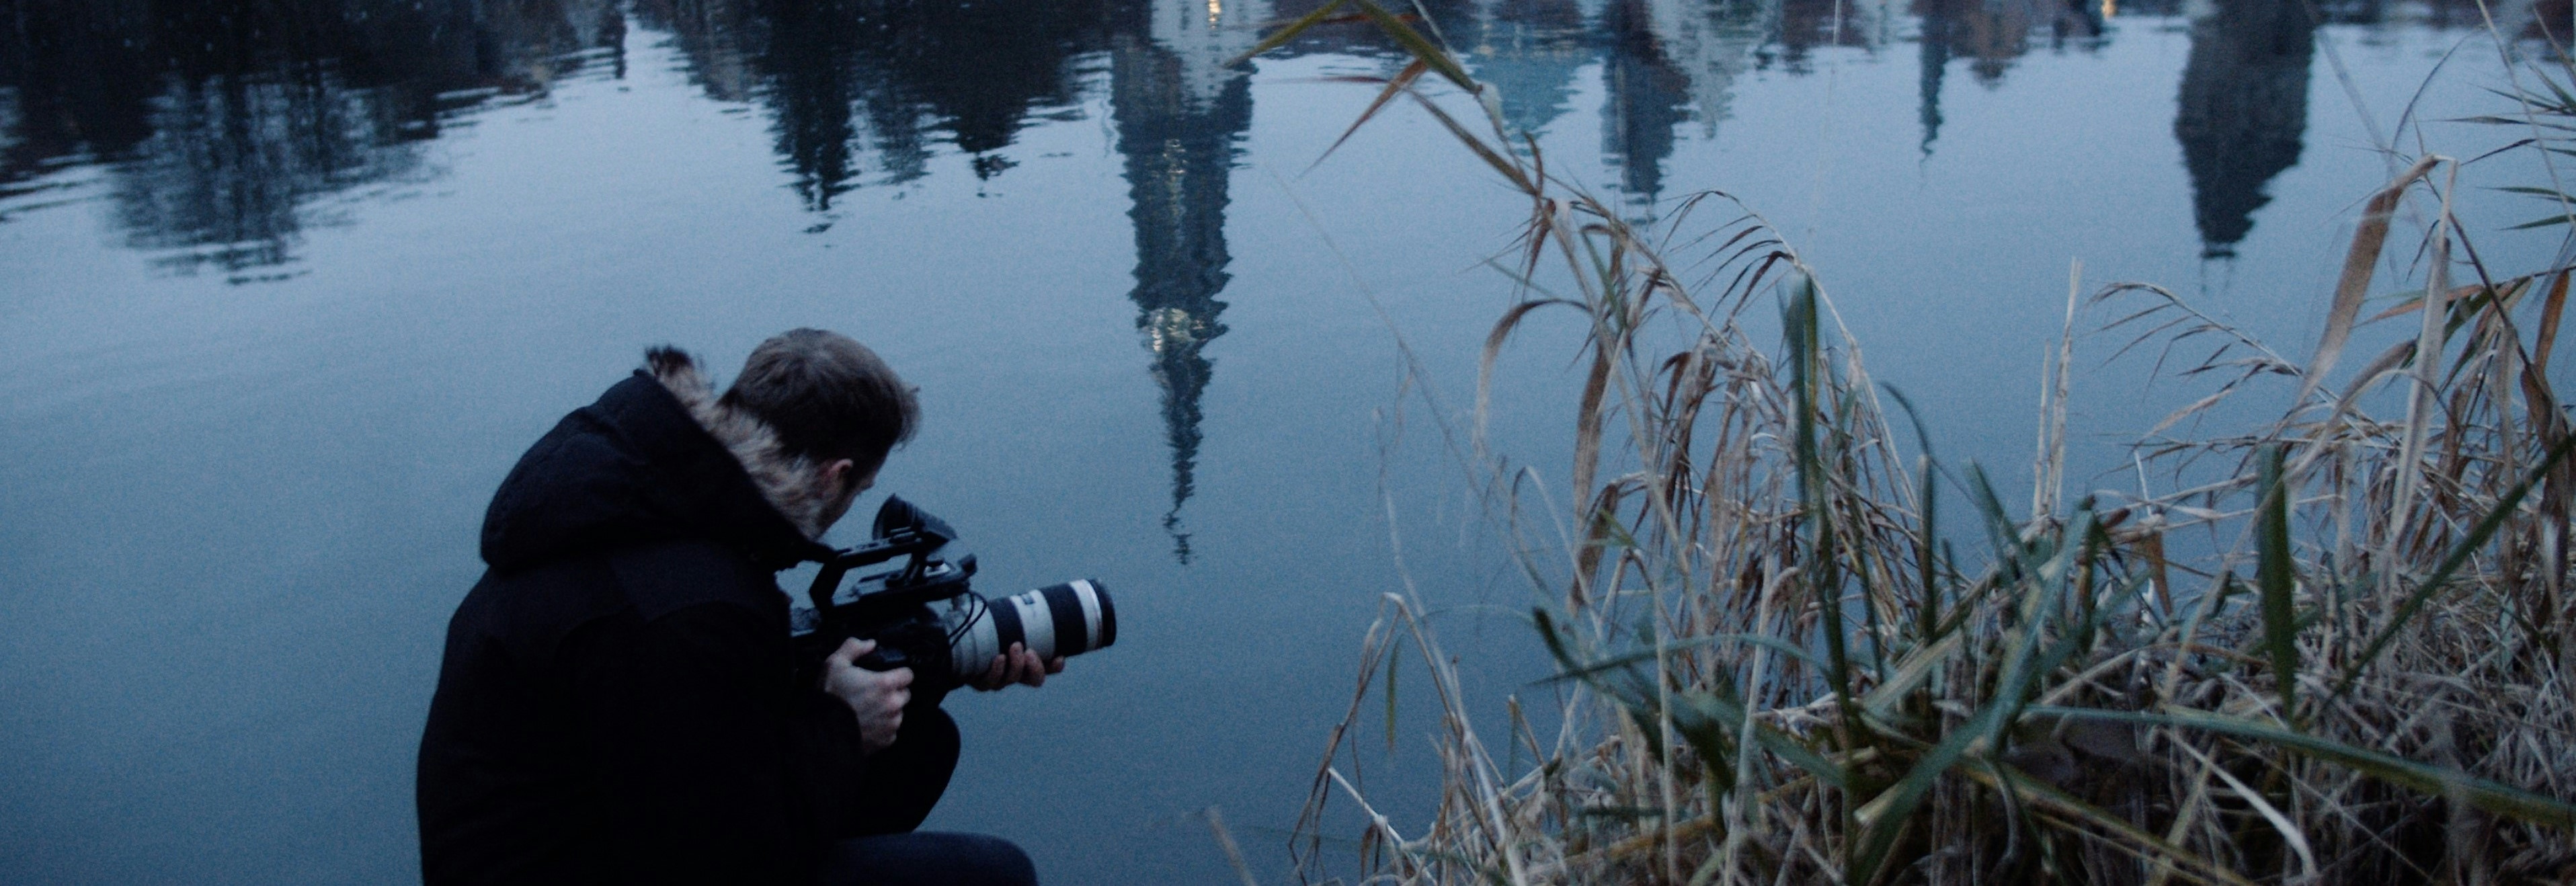 Filmemacher Cornelius Bierer mit Kamera nahe der Donau in dem sich das Ulmer Münster spiegelt